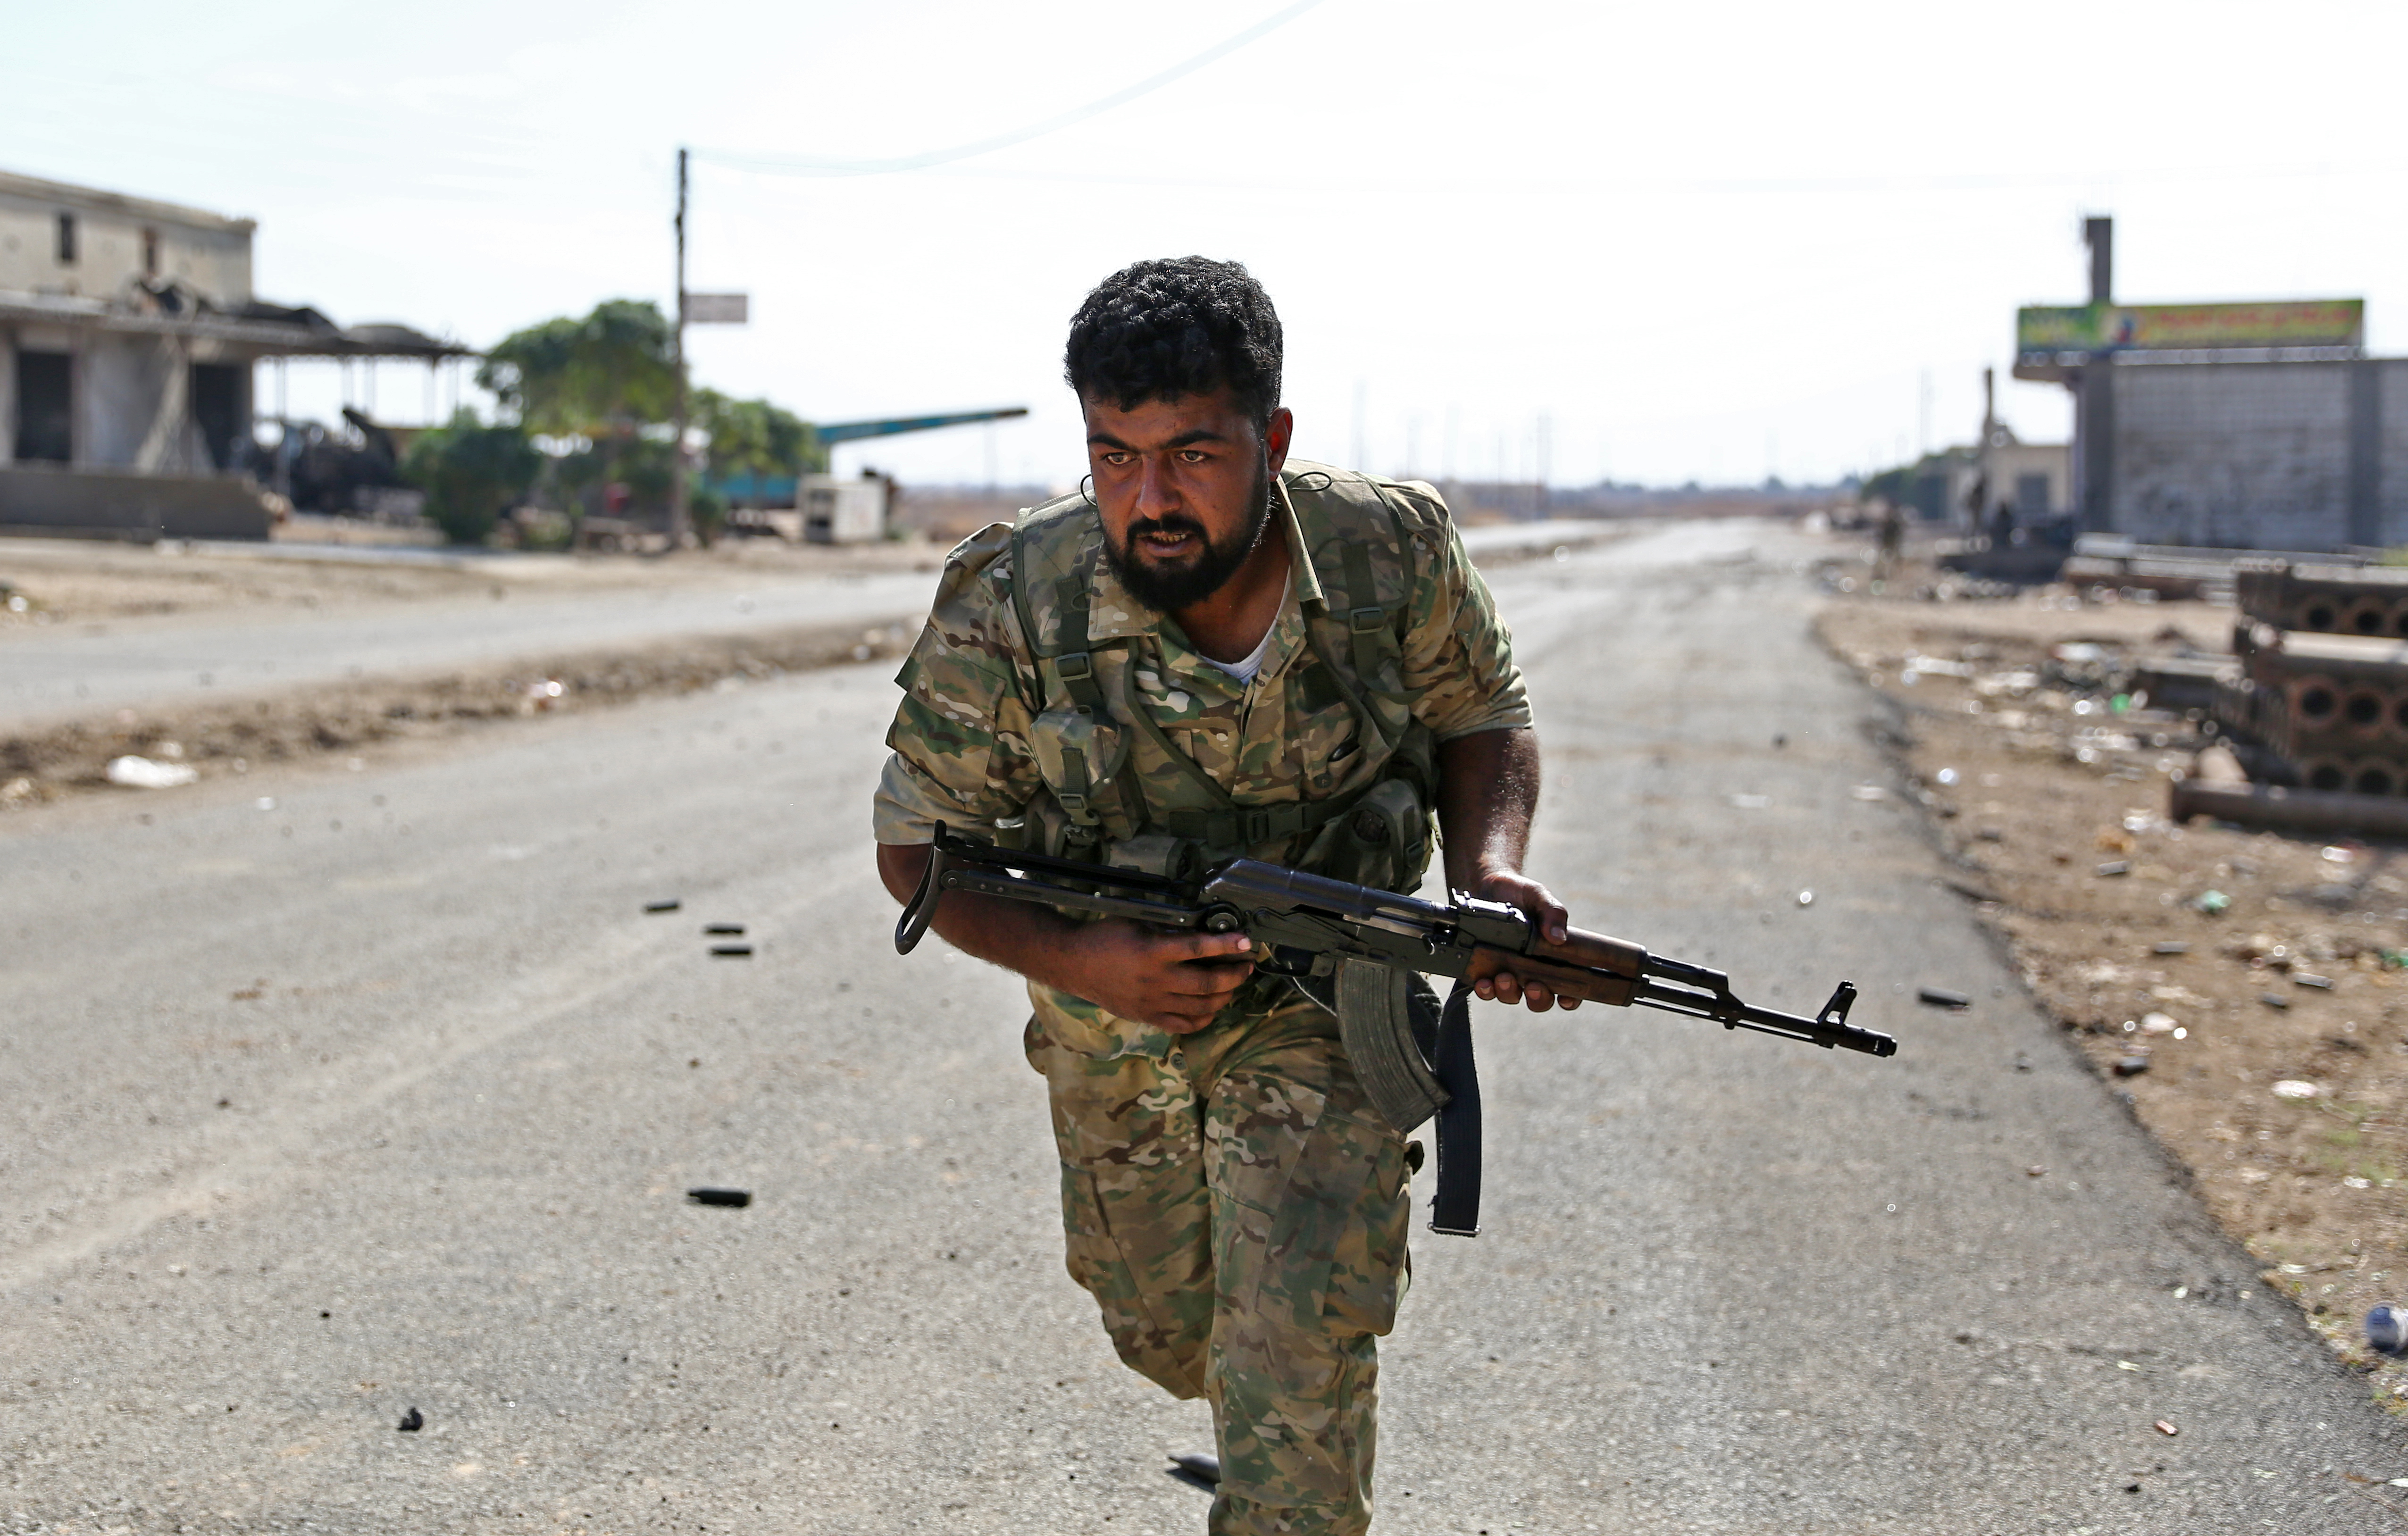 A törkök által támogatott szíriai milícia egyik tagja a török határ melletti Ras al-Ain városban.